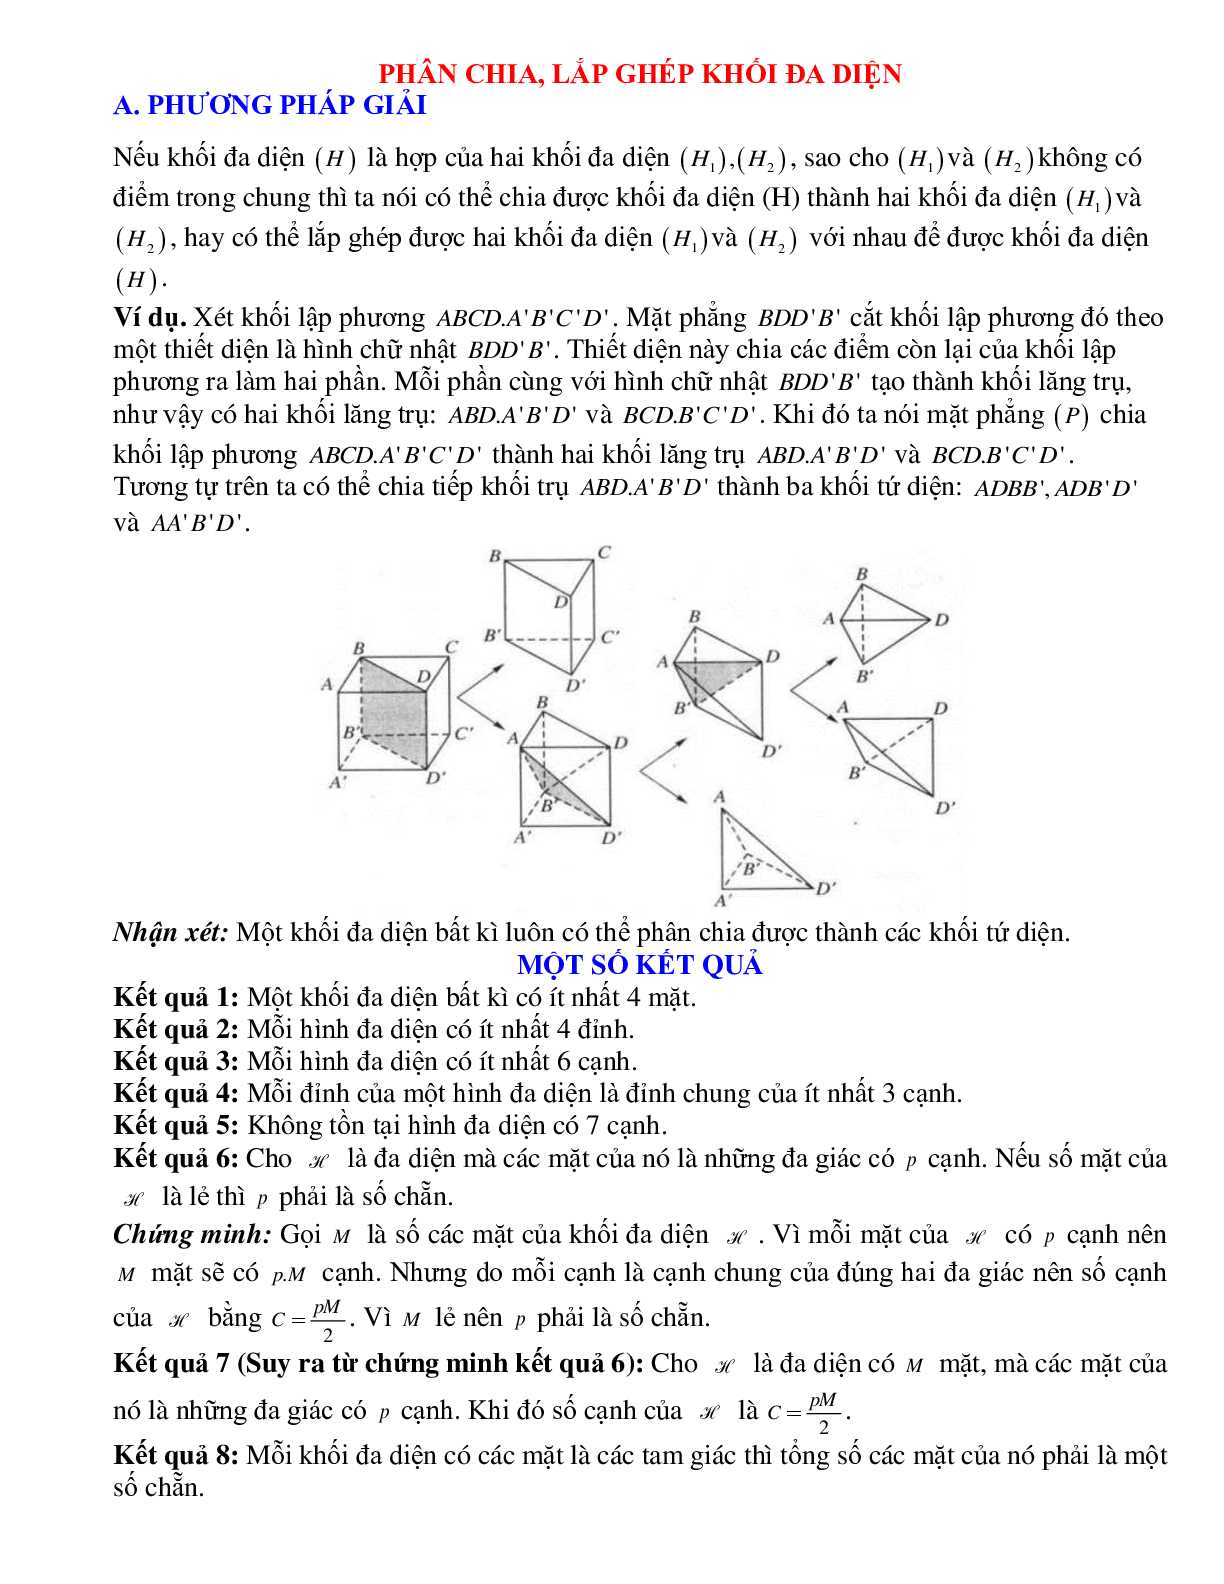 Phương pháp giải và bài tập về Phân chia, lắp ghép khối đa diện (trang 1)